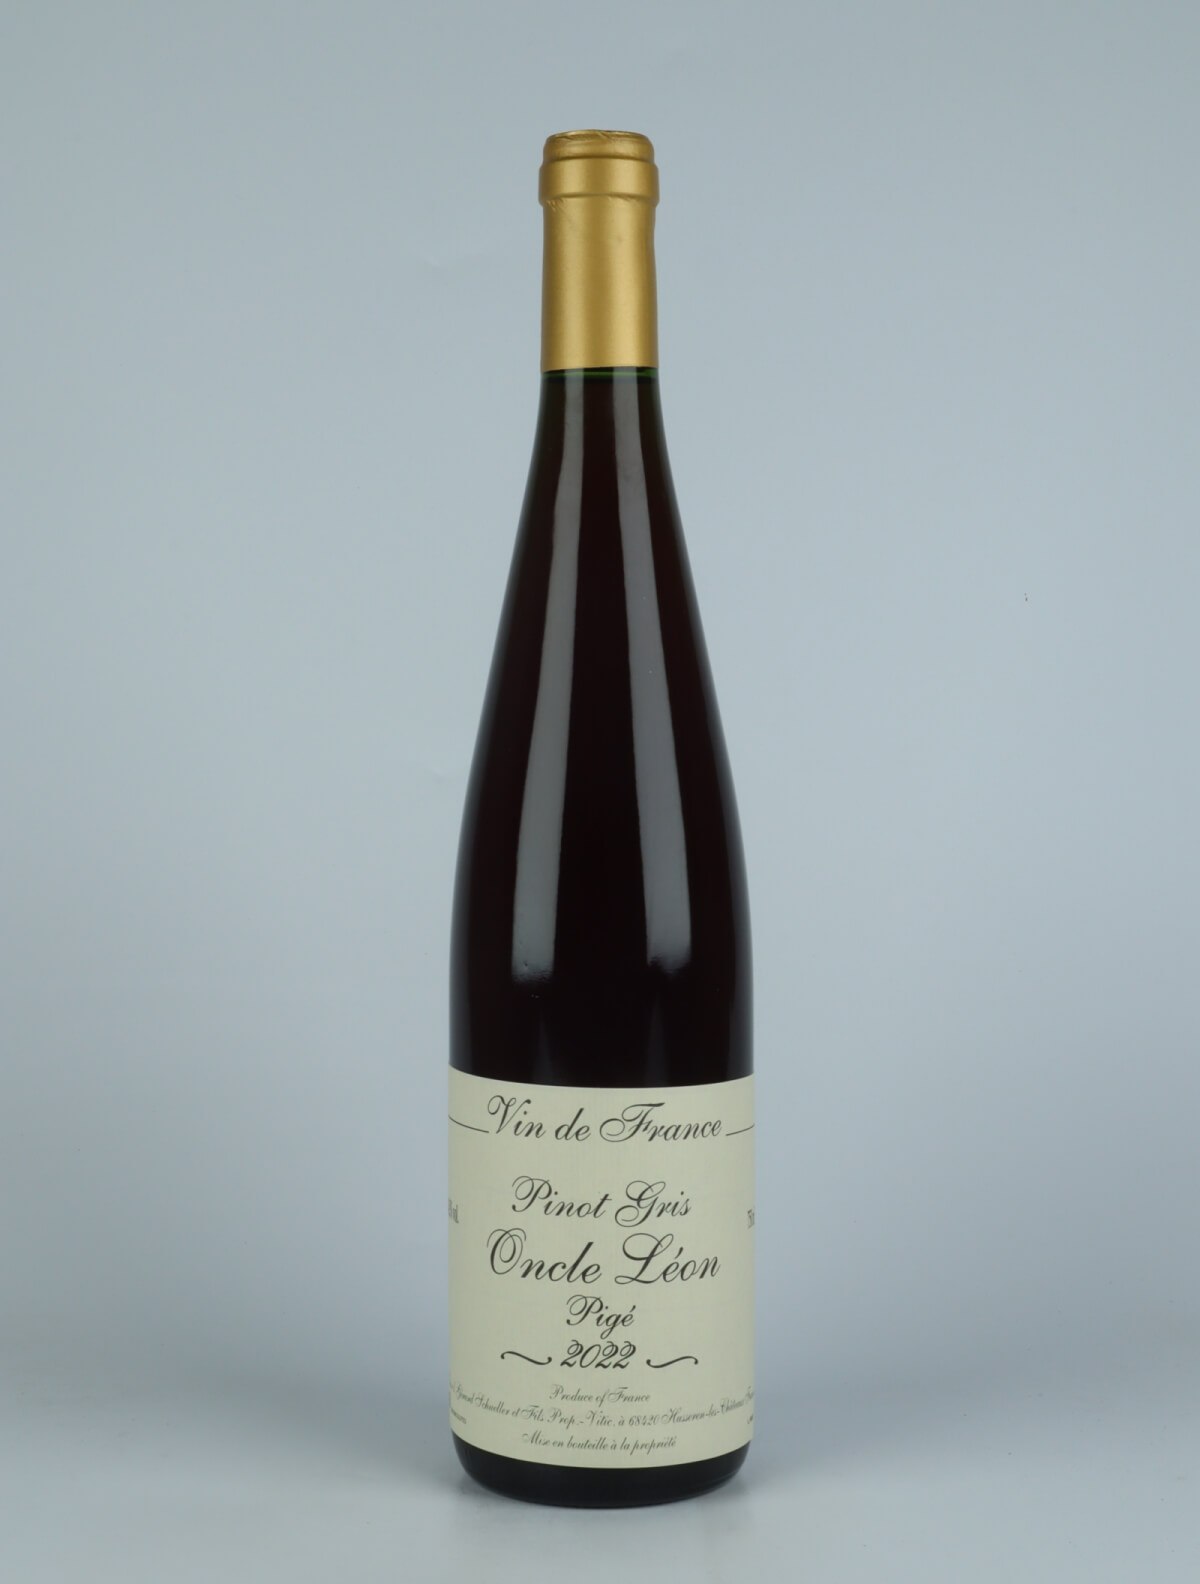 A bottle 2022 Cuvée de l'Oncle Léon Orange wine from Gérard Schueller, Alsace in France